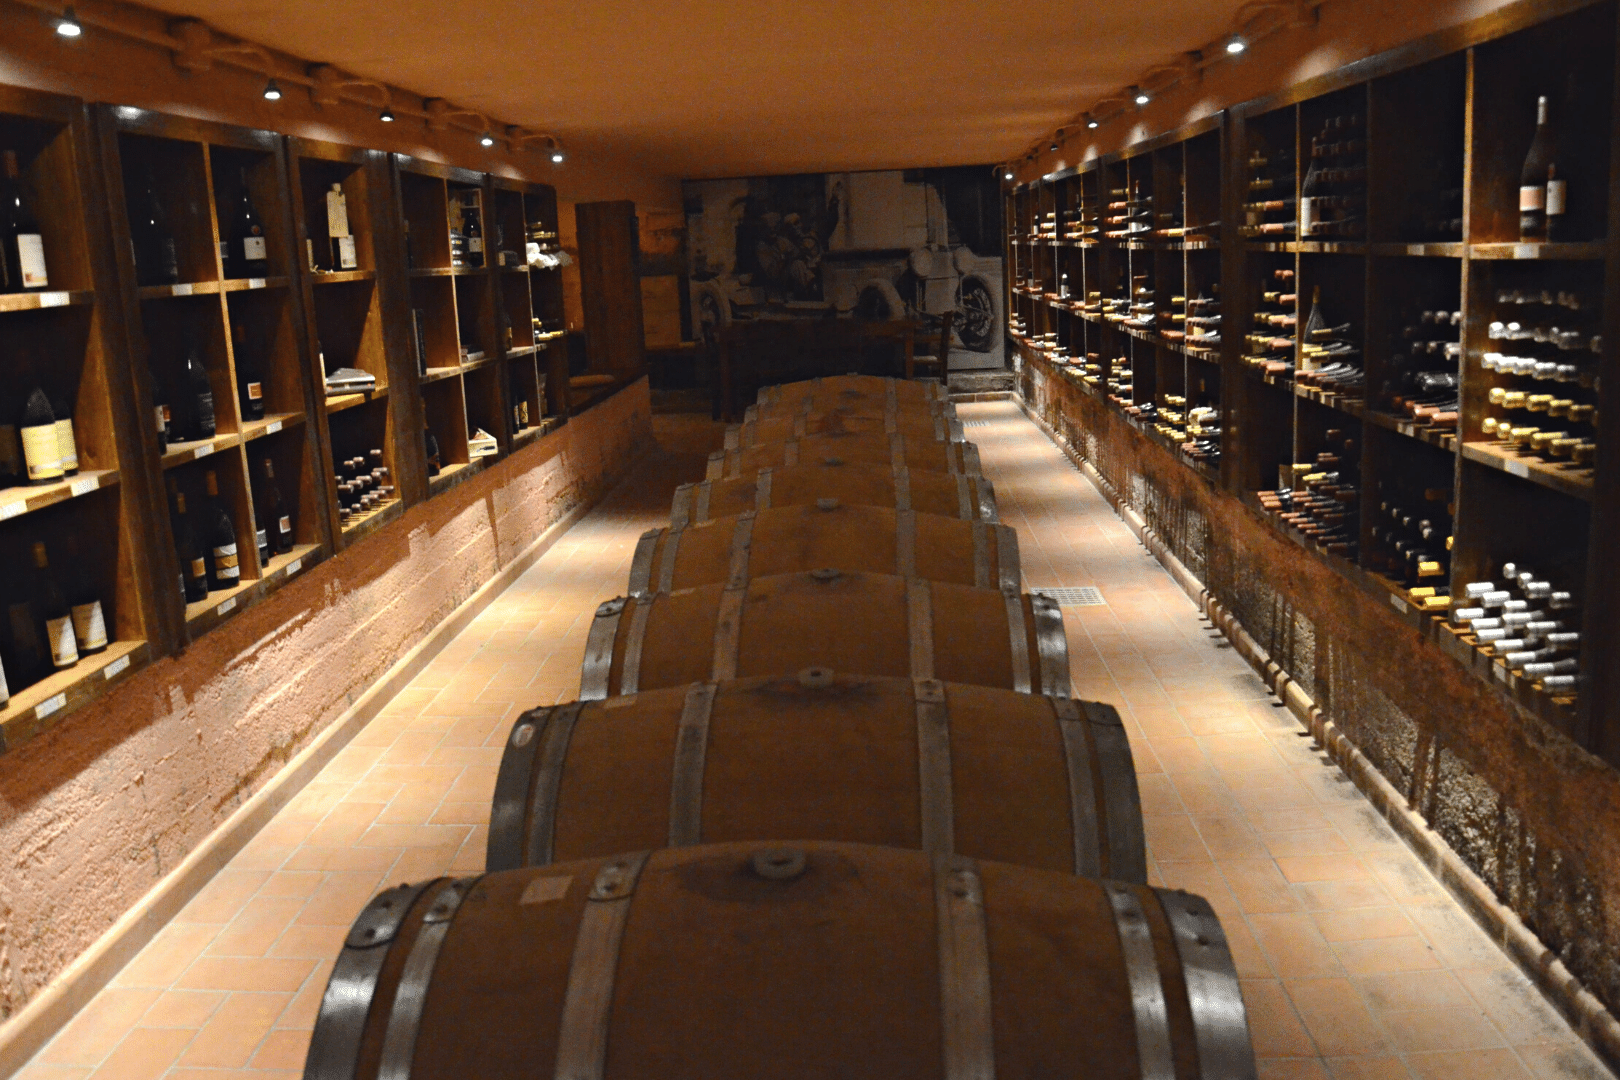 2Italia Food & Wine. Ancient wine cellar visit and winetasting